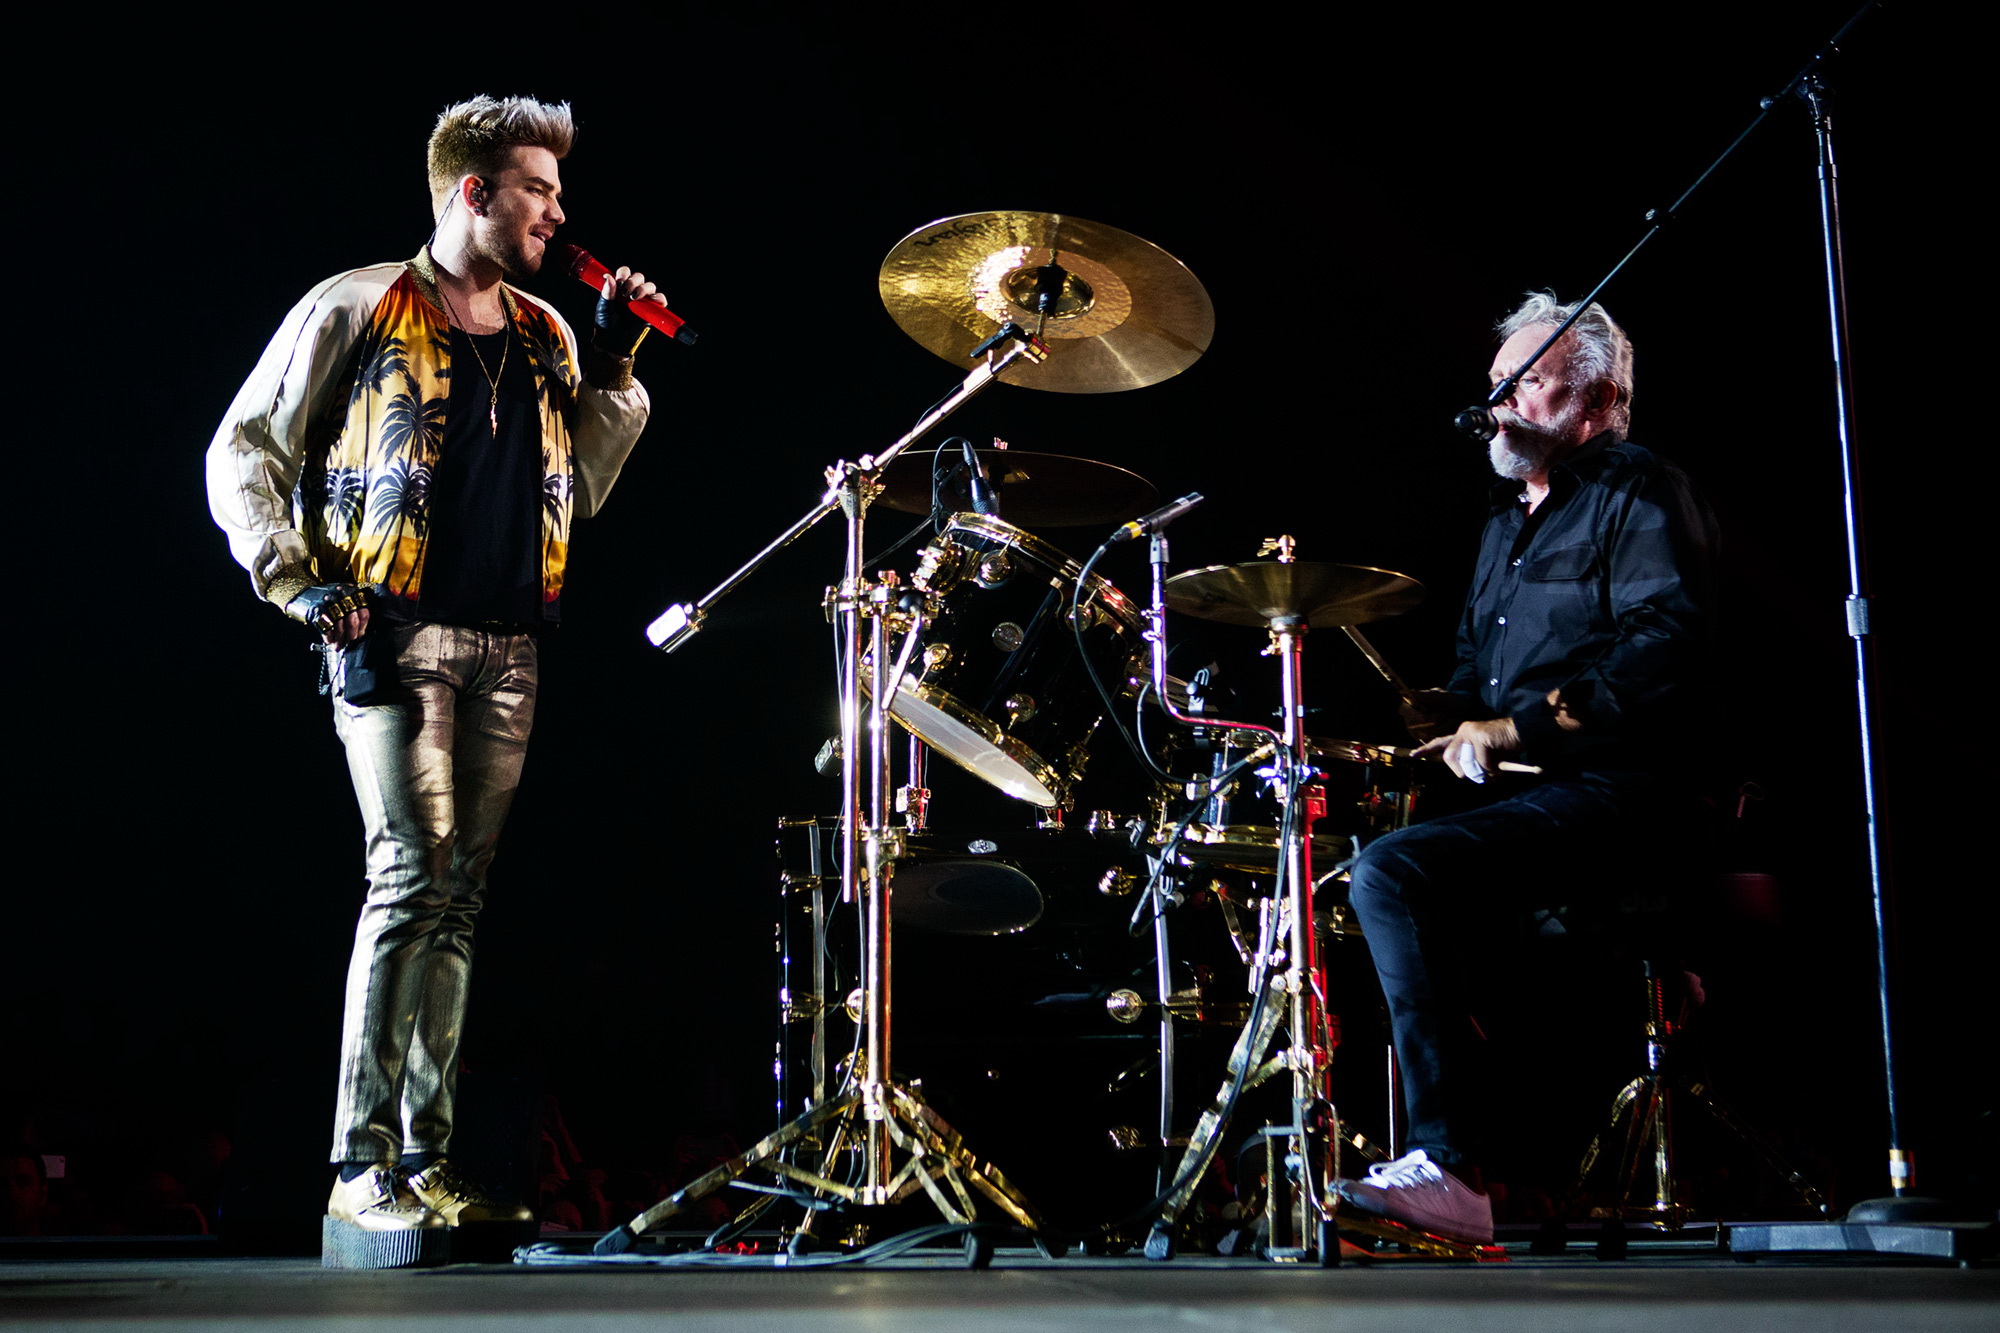 Początek światowego tour Queen + Adam Lambert za dwa miesiące. Łódź też jest na mapie koncertowej! 